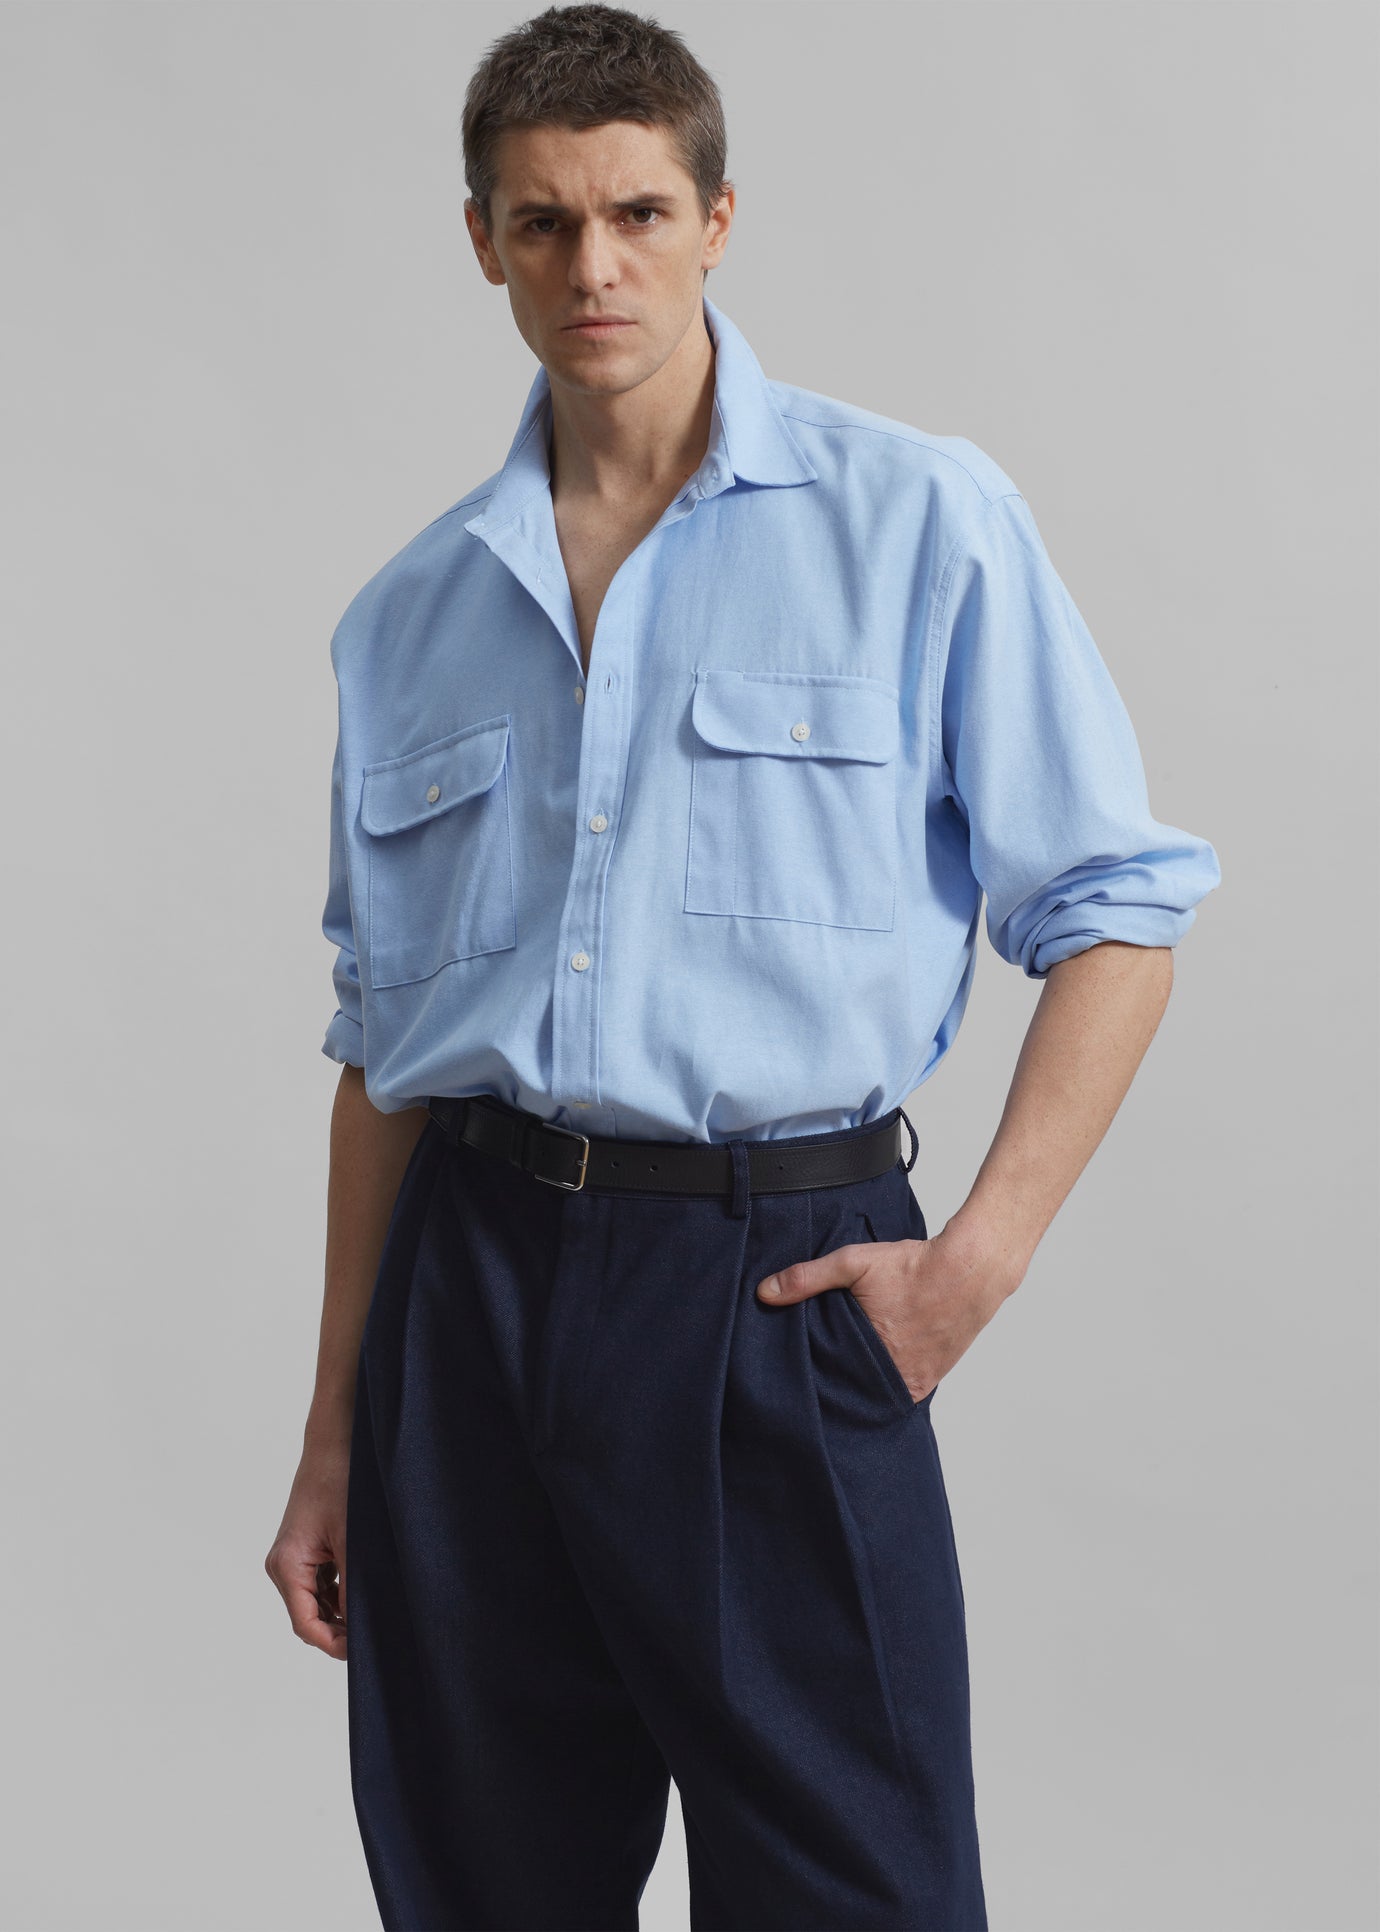 Alexander Button Up Shirt - Blue